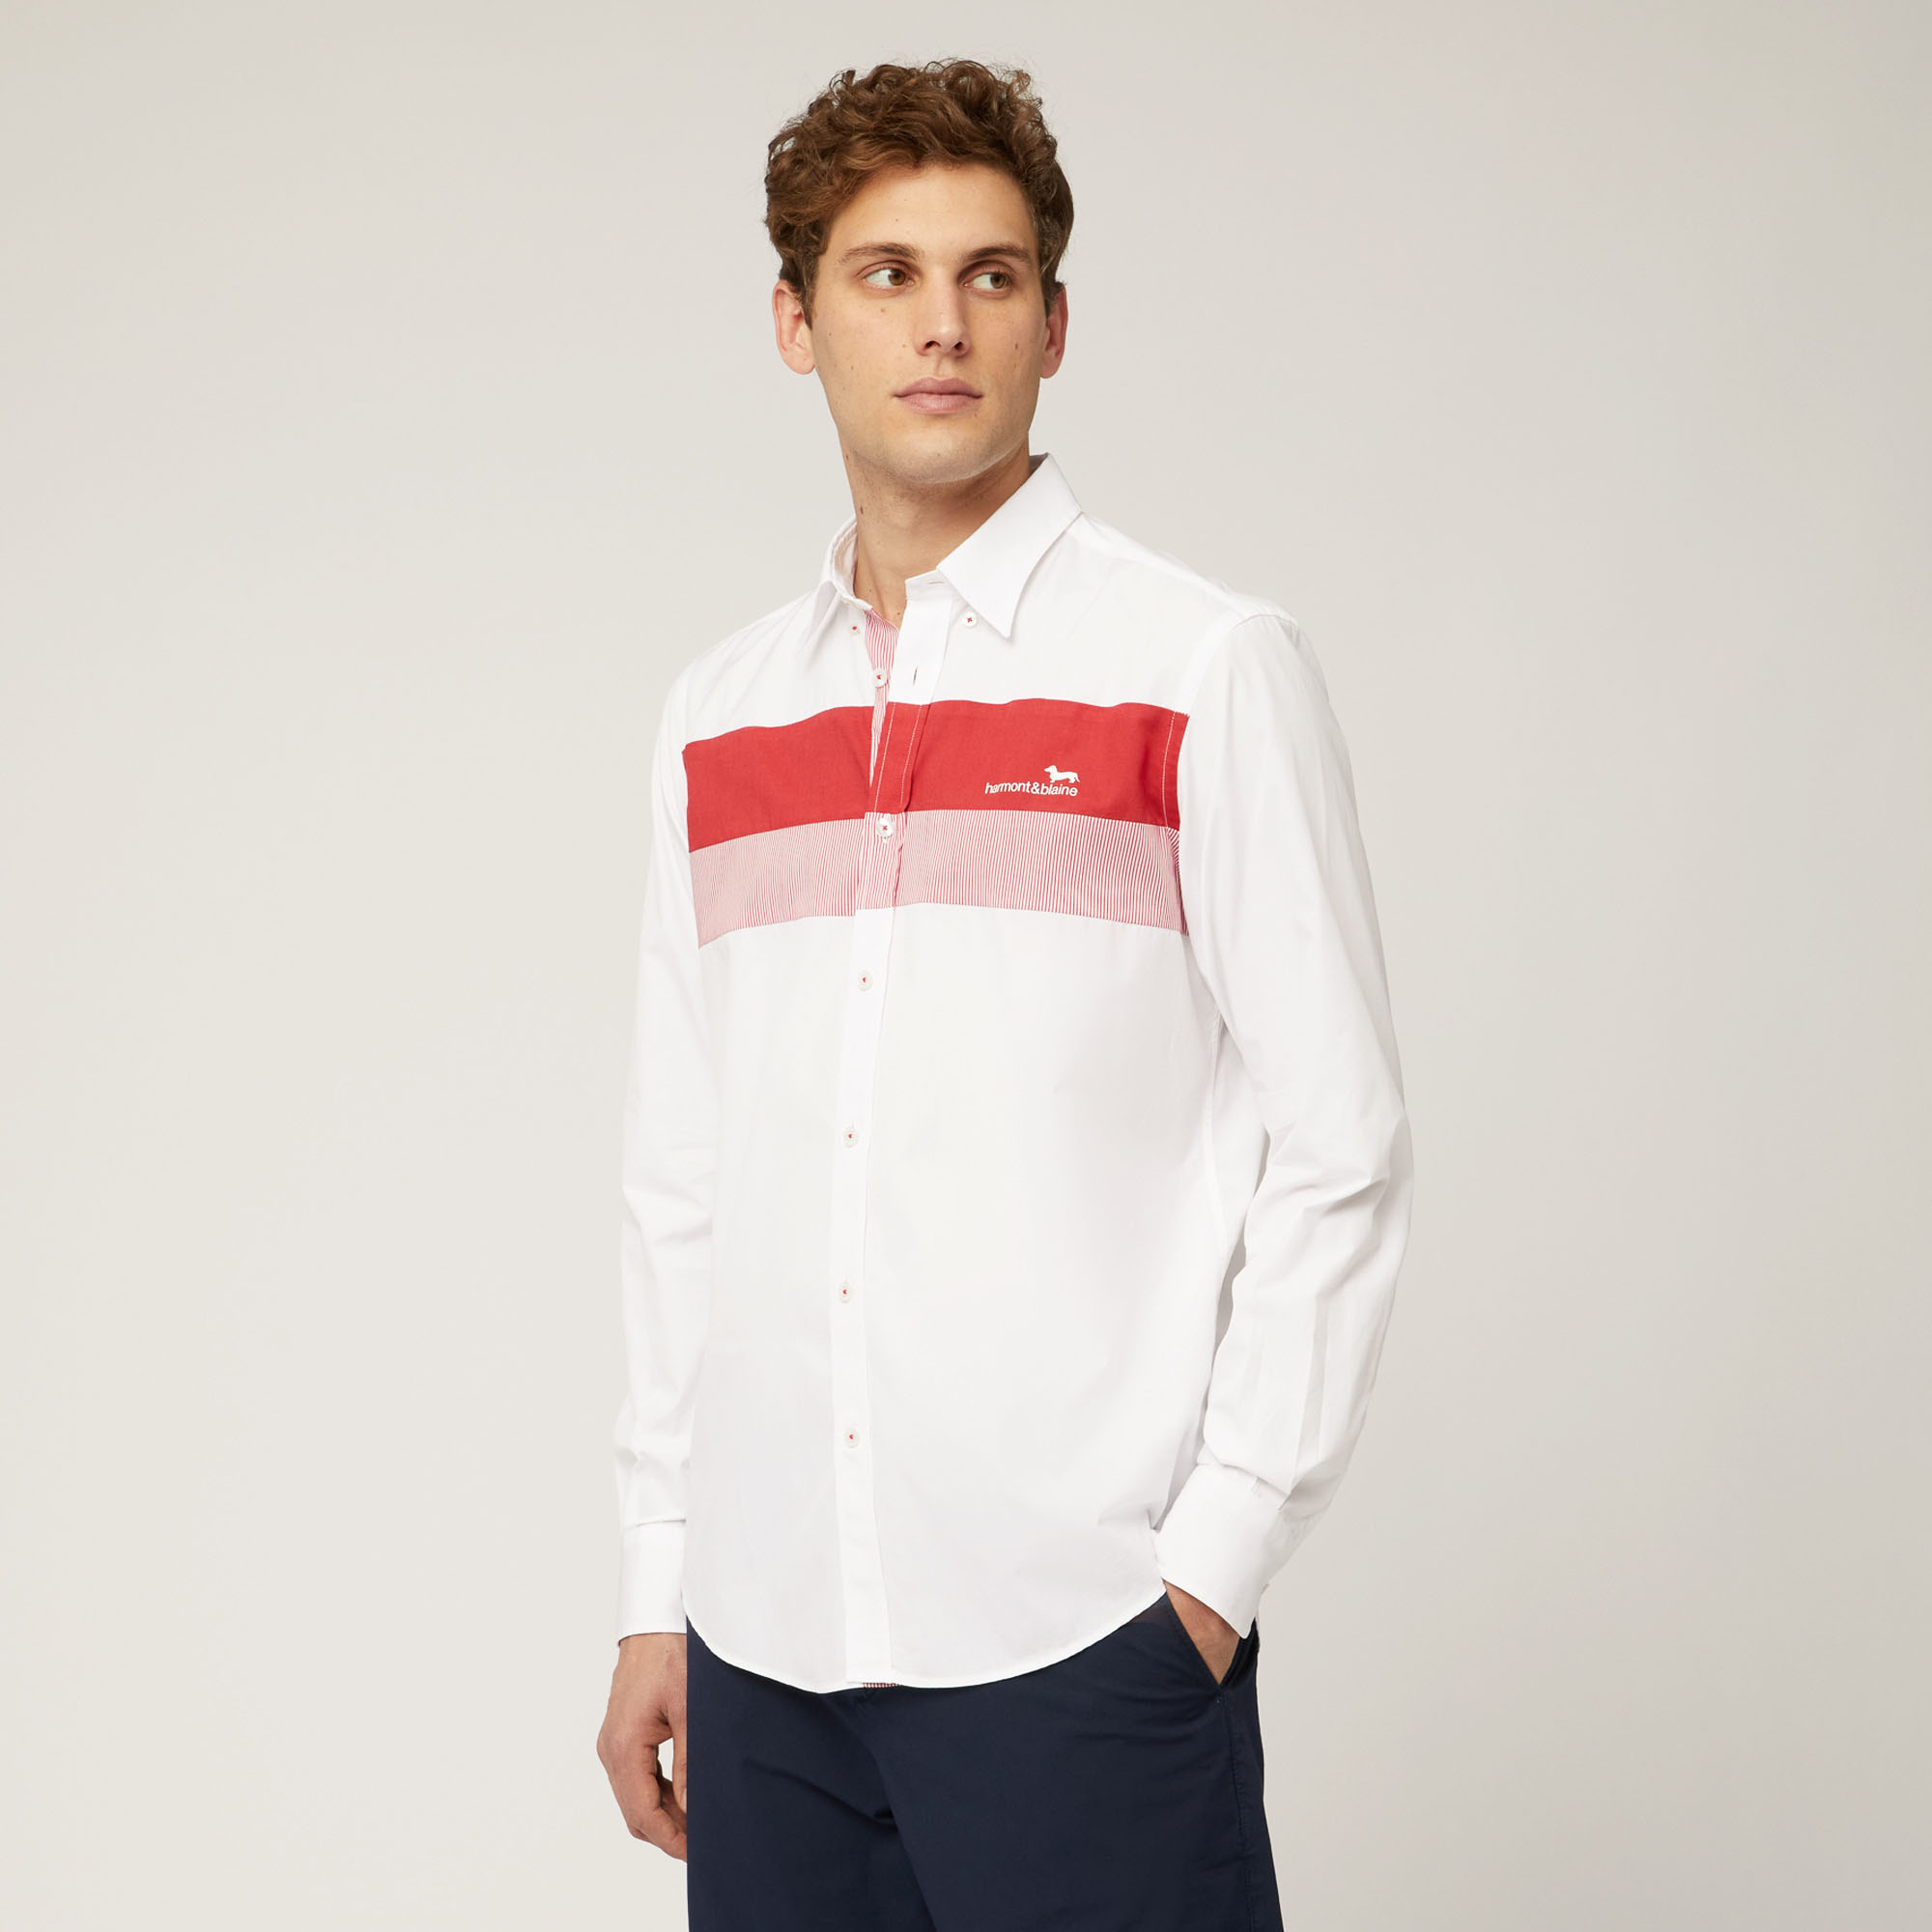 Camicia In Cotone Con Fasce A Contrasto E Logo, Rosso Chiaro, large